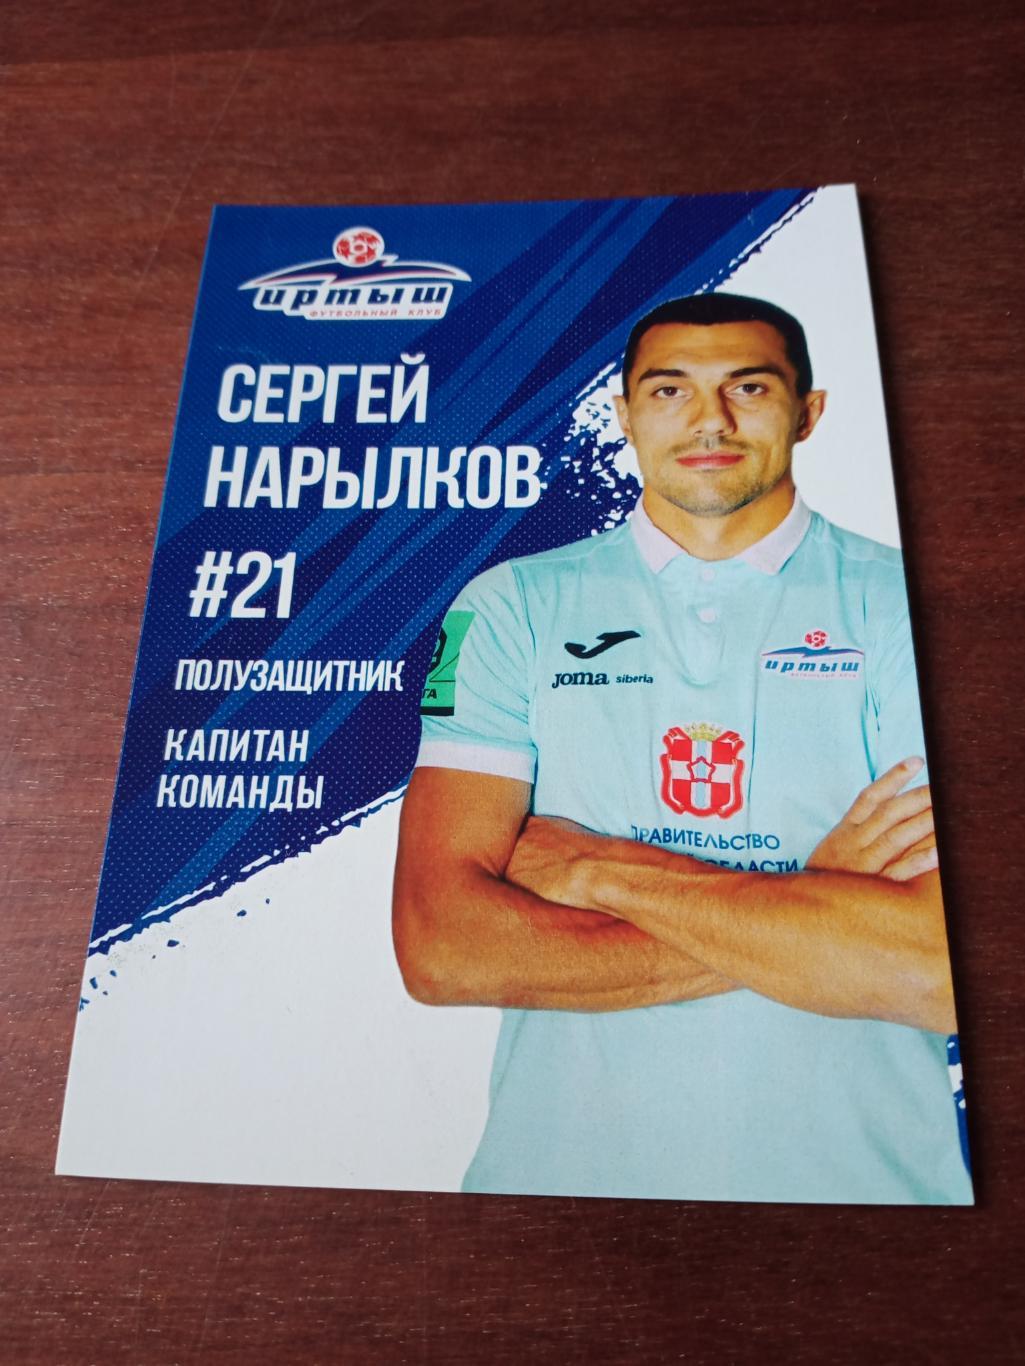 Сергей Нарылков - капитан ФК Иртыш Омск в сезоне-2022/2023